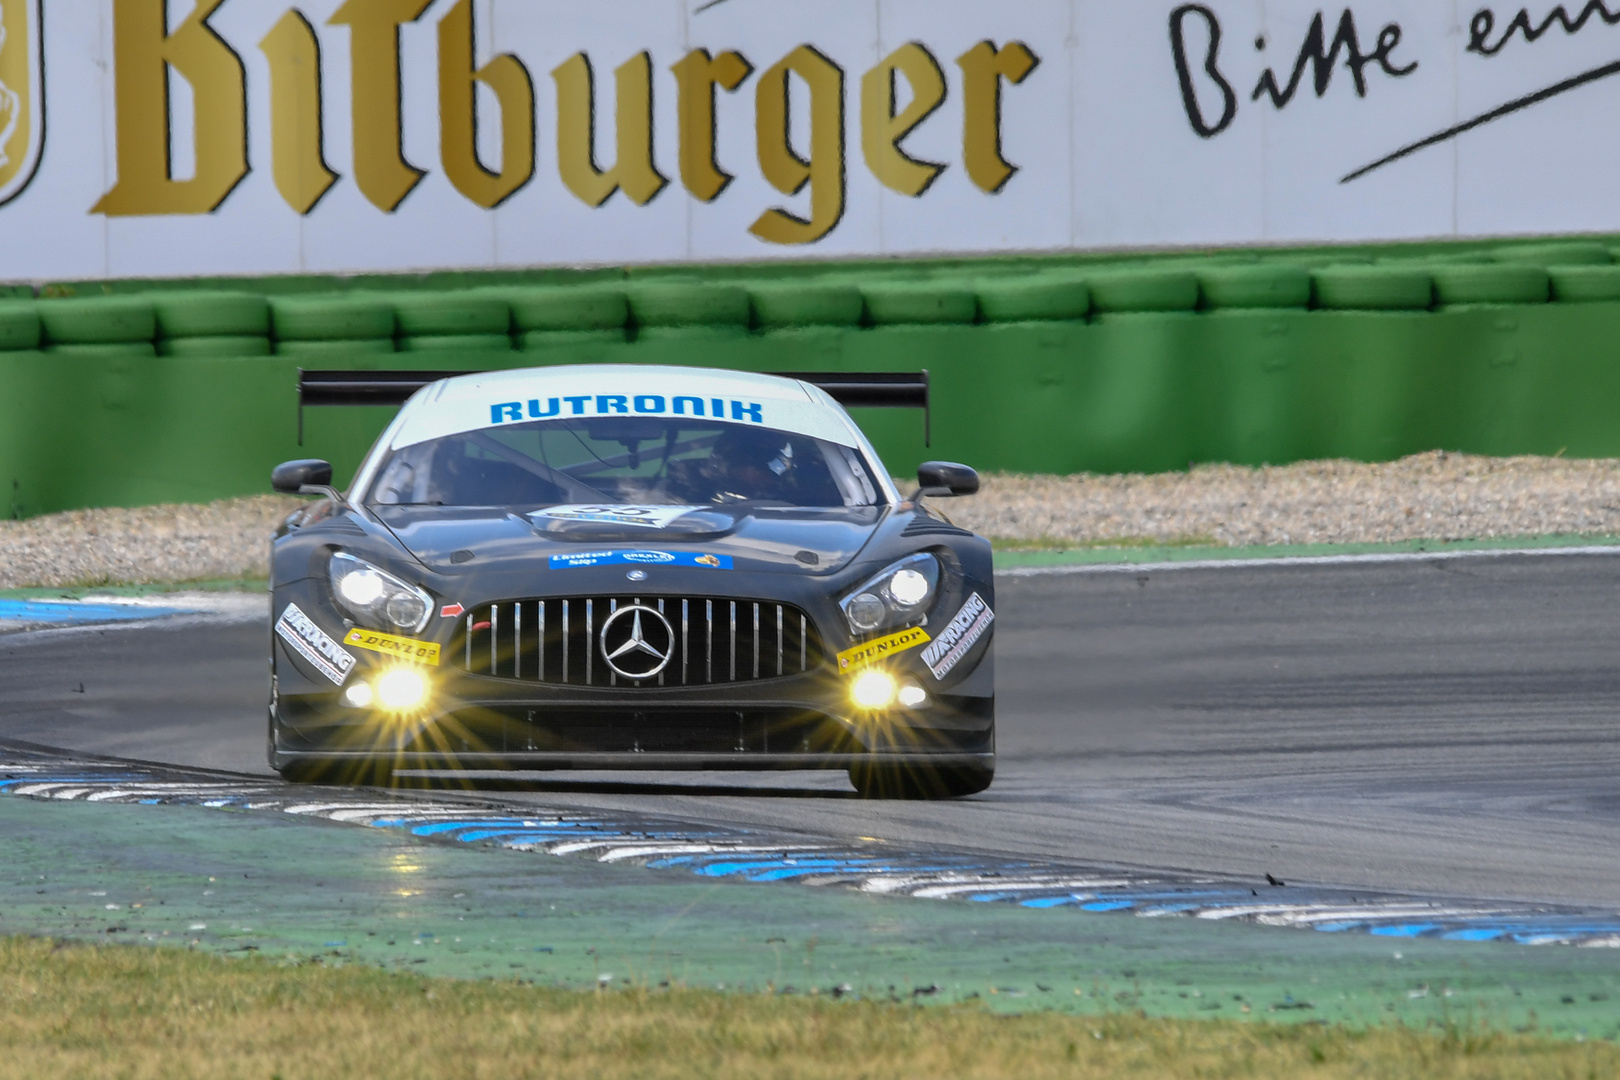 Rutronik Daimler Racing